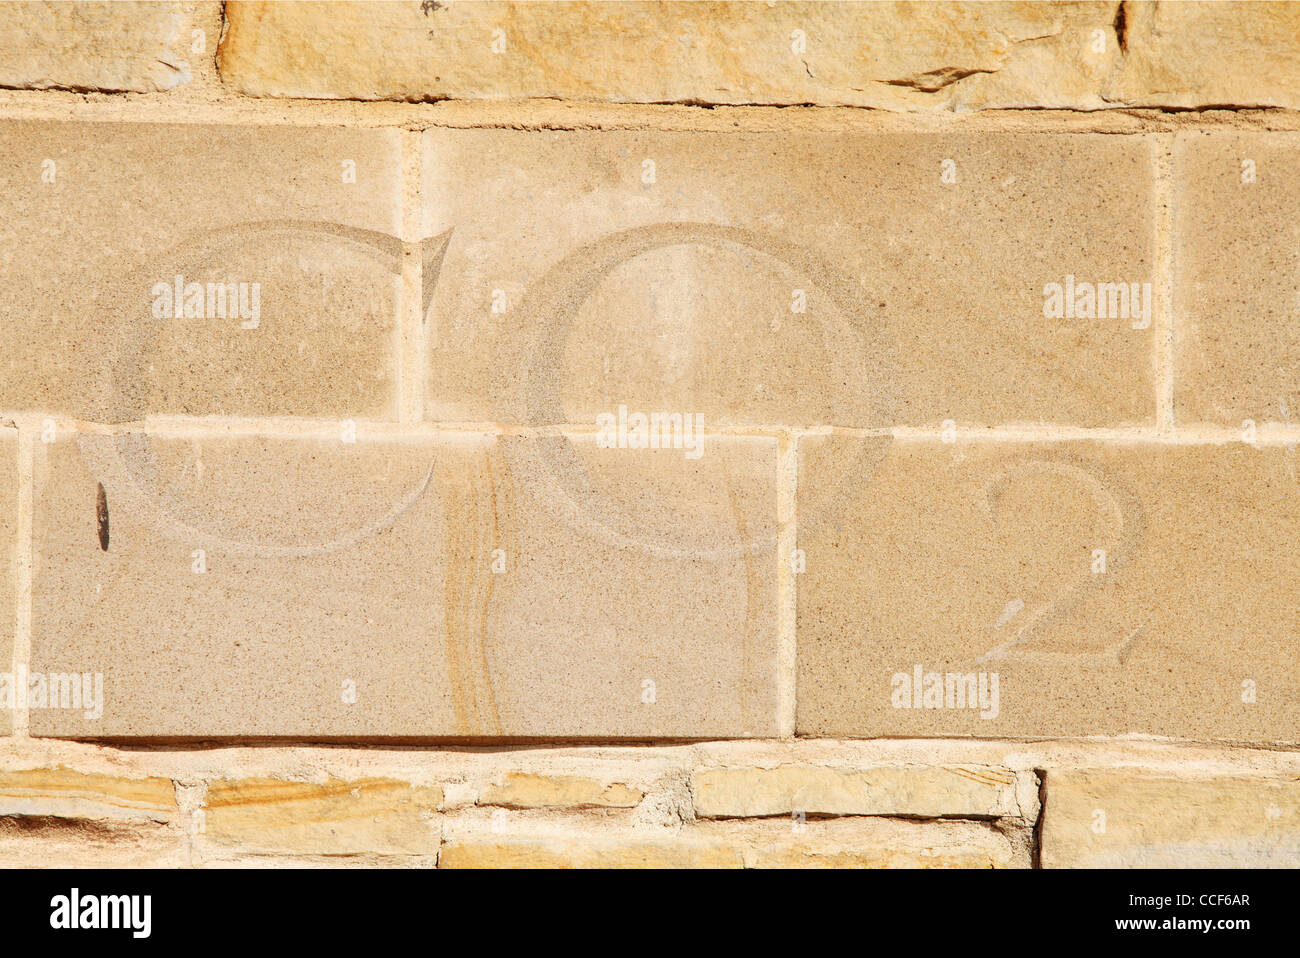 Le dioxyde de carbone CO2 des lettres gravées dans la pierre anciens fours à chaux Sunderland North East England UK Banque D'Images